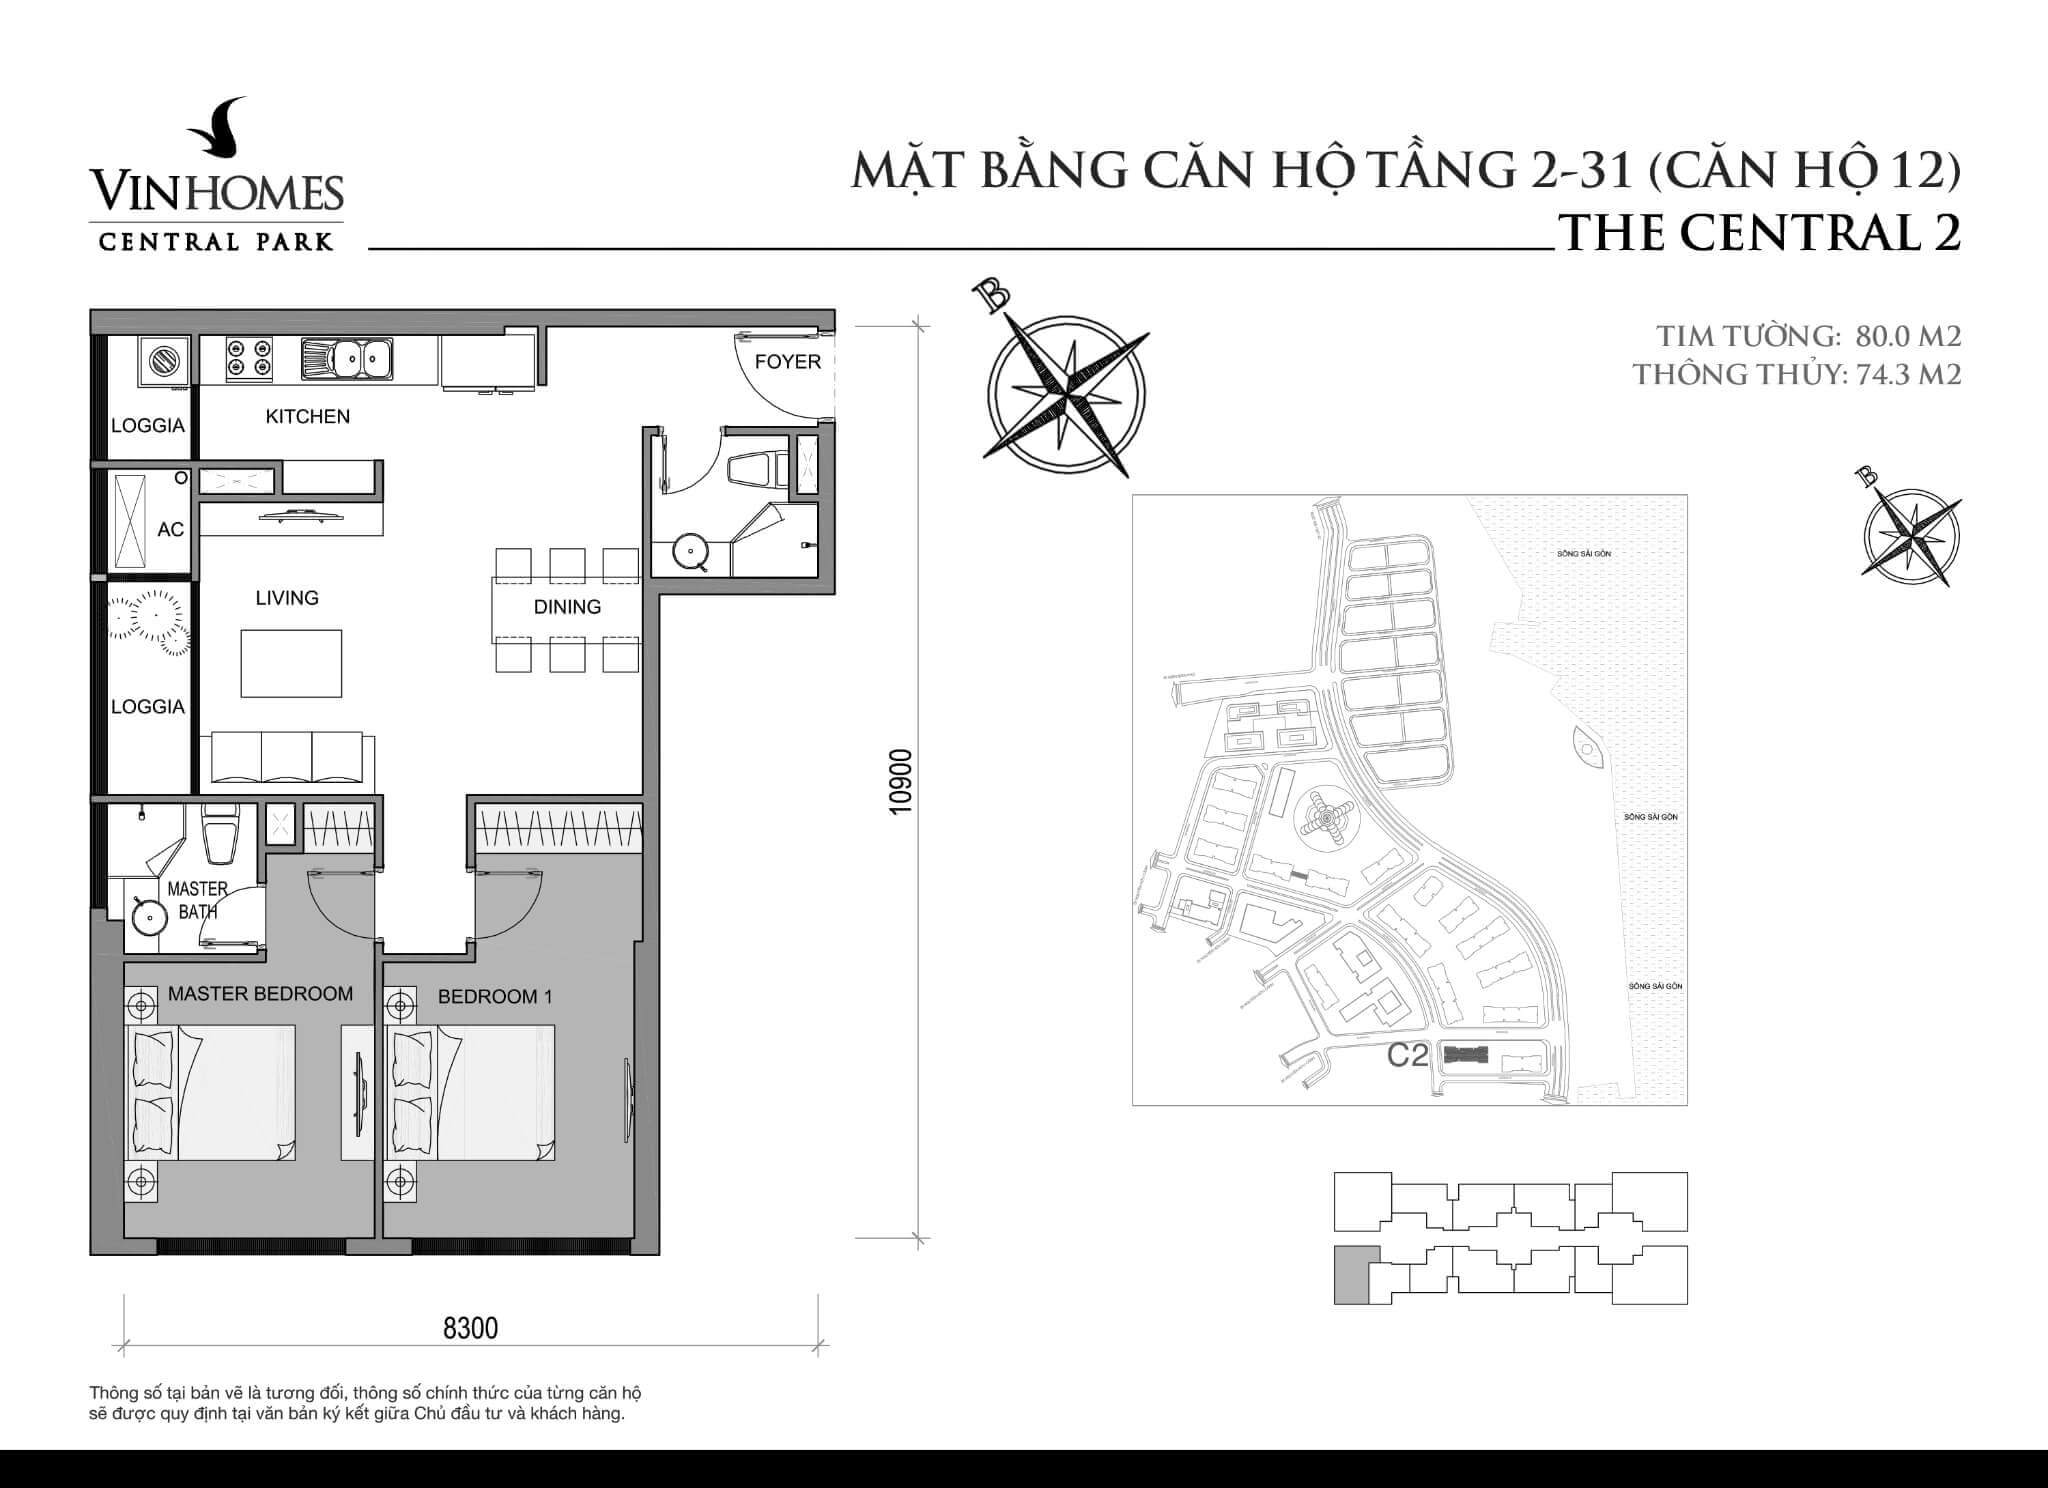 layout căn hộ số 12 tầng 2-31 Central 2